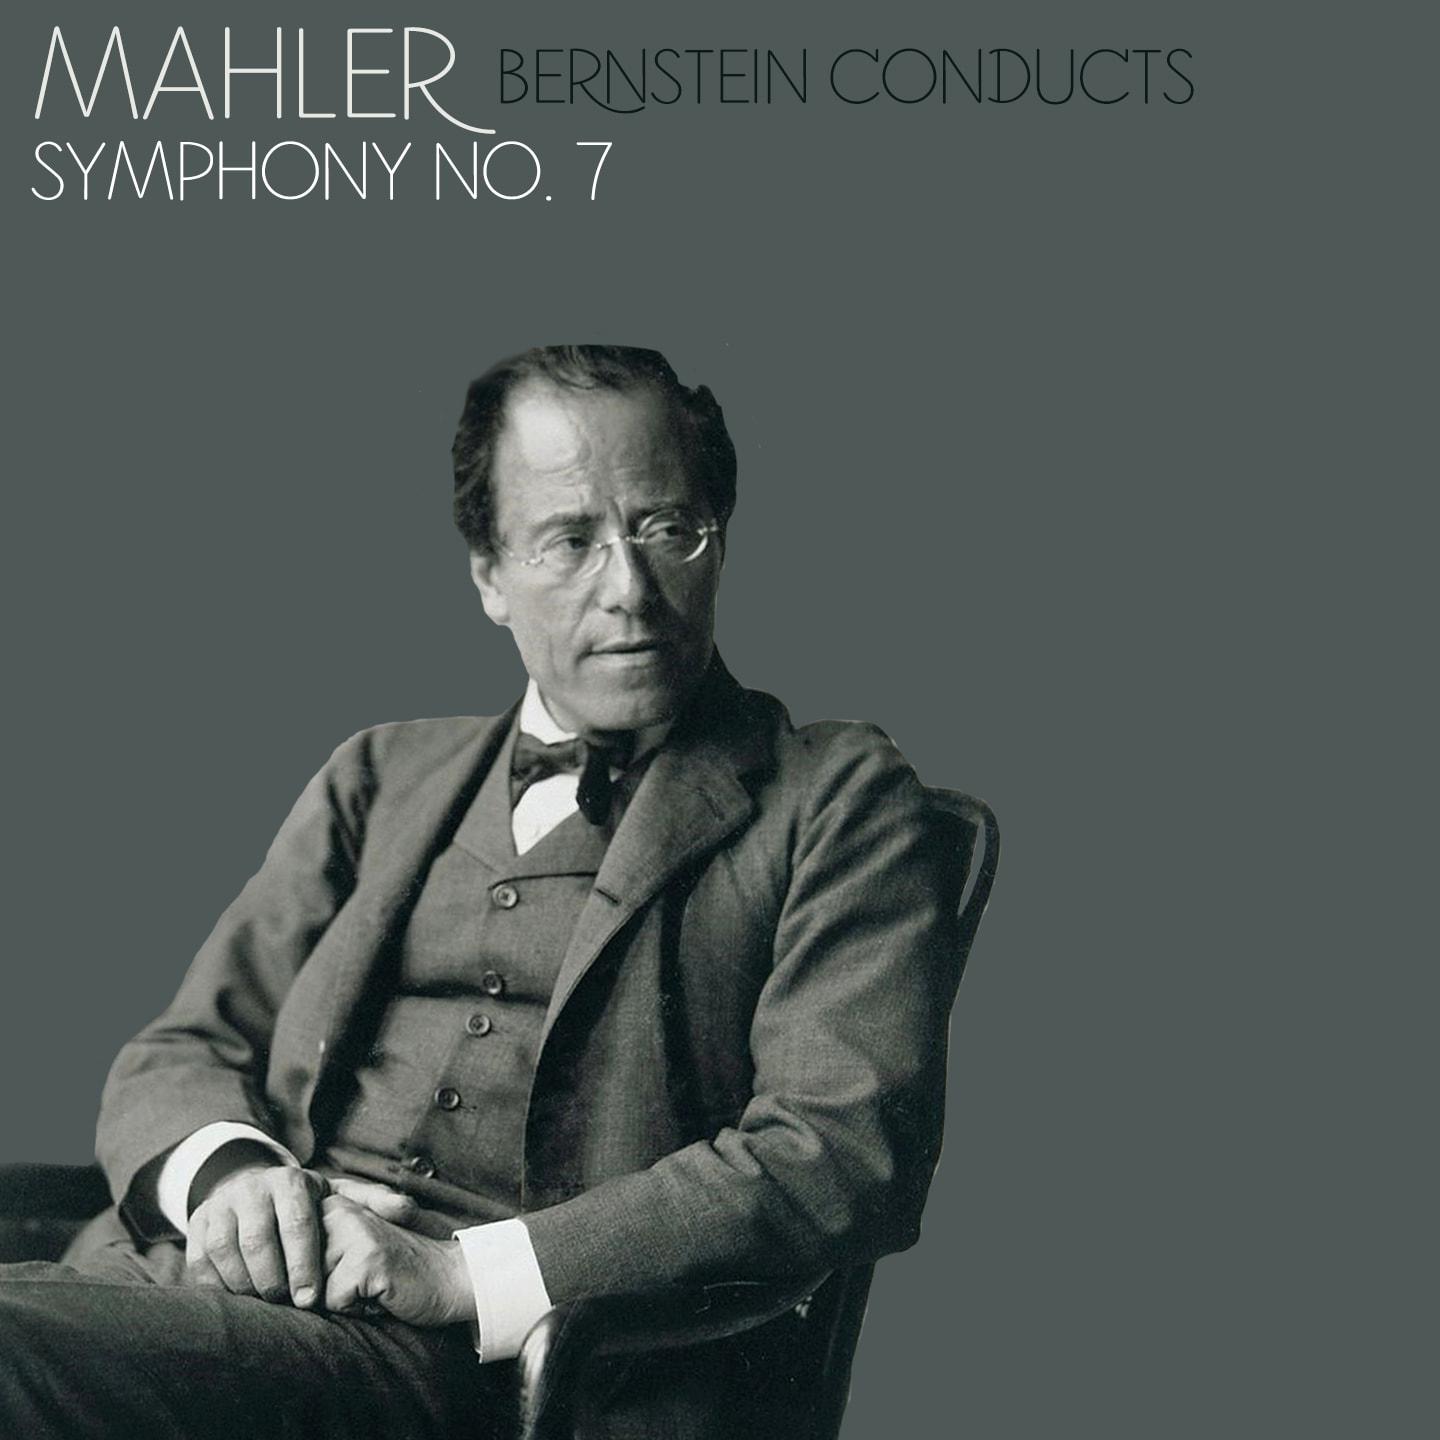 Mahler: Symphony No. 7, Op. 55